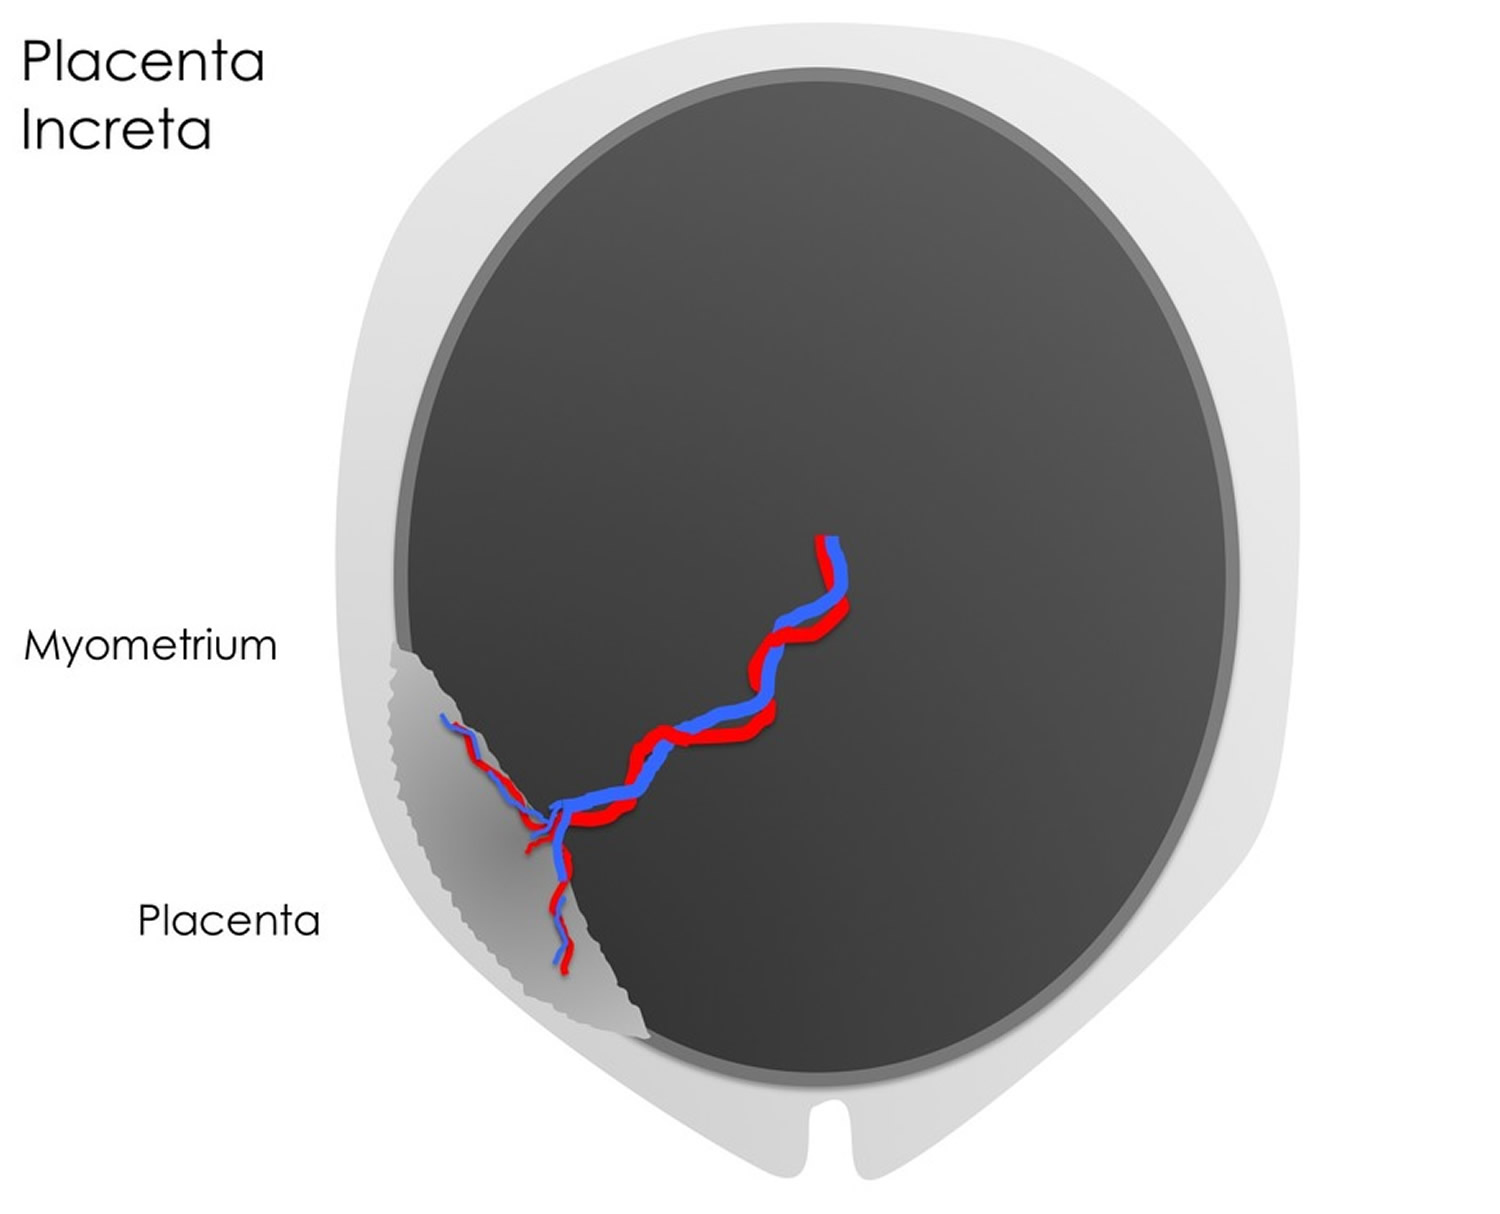 Placenta increta